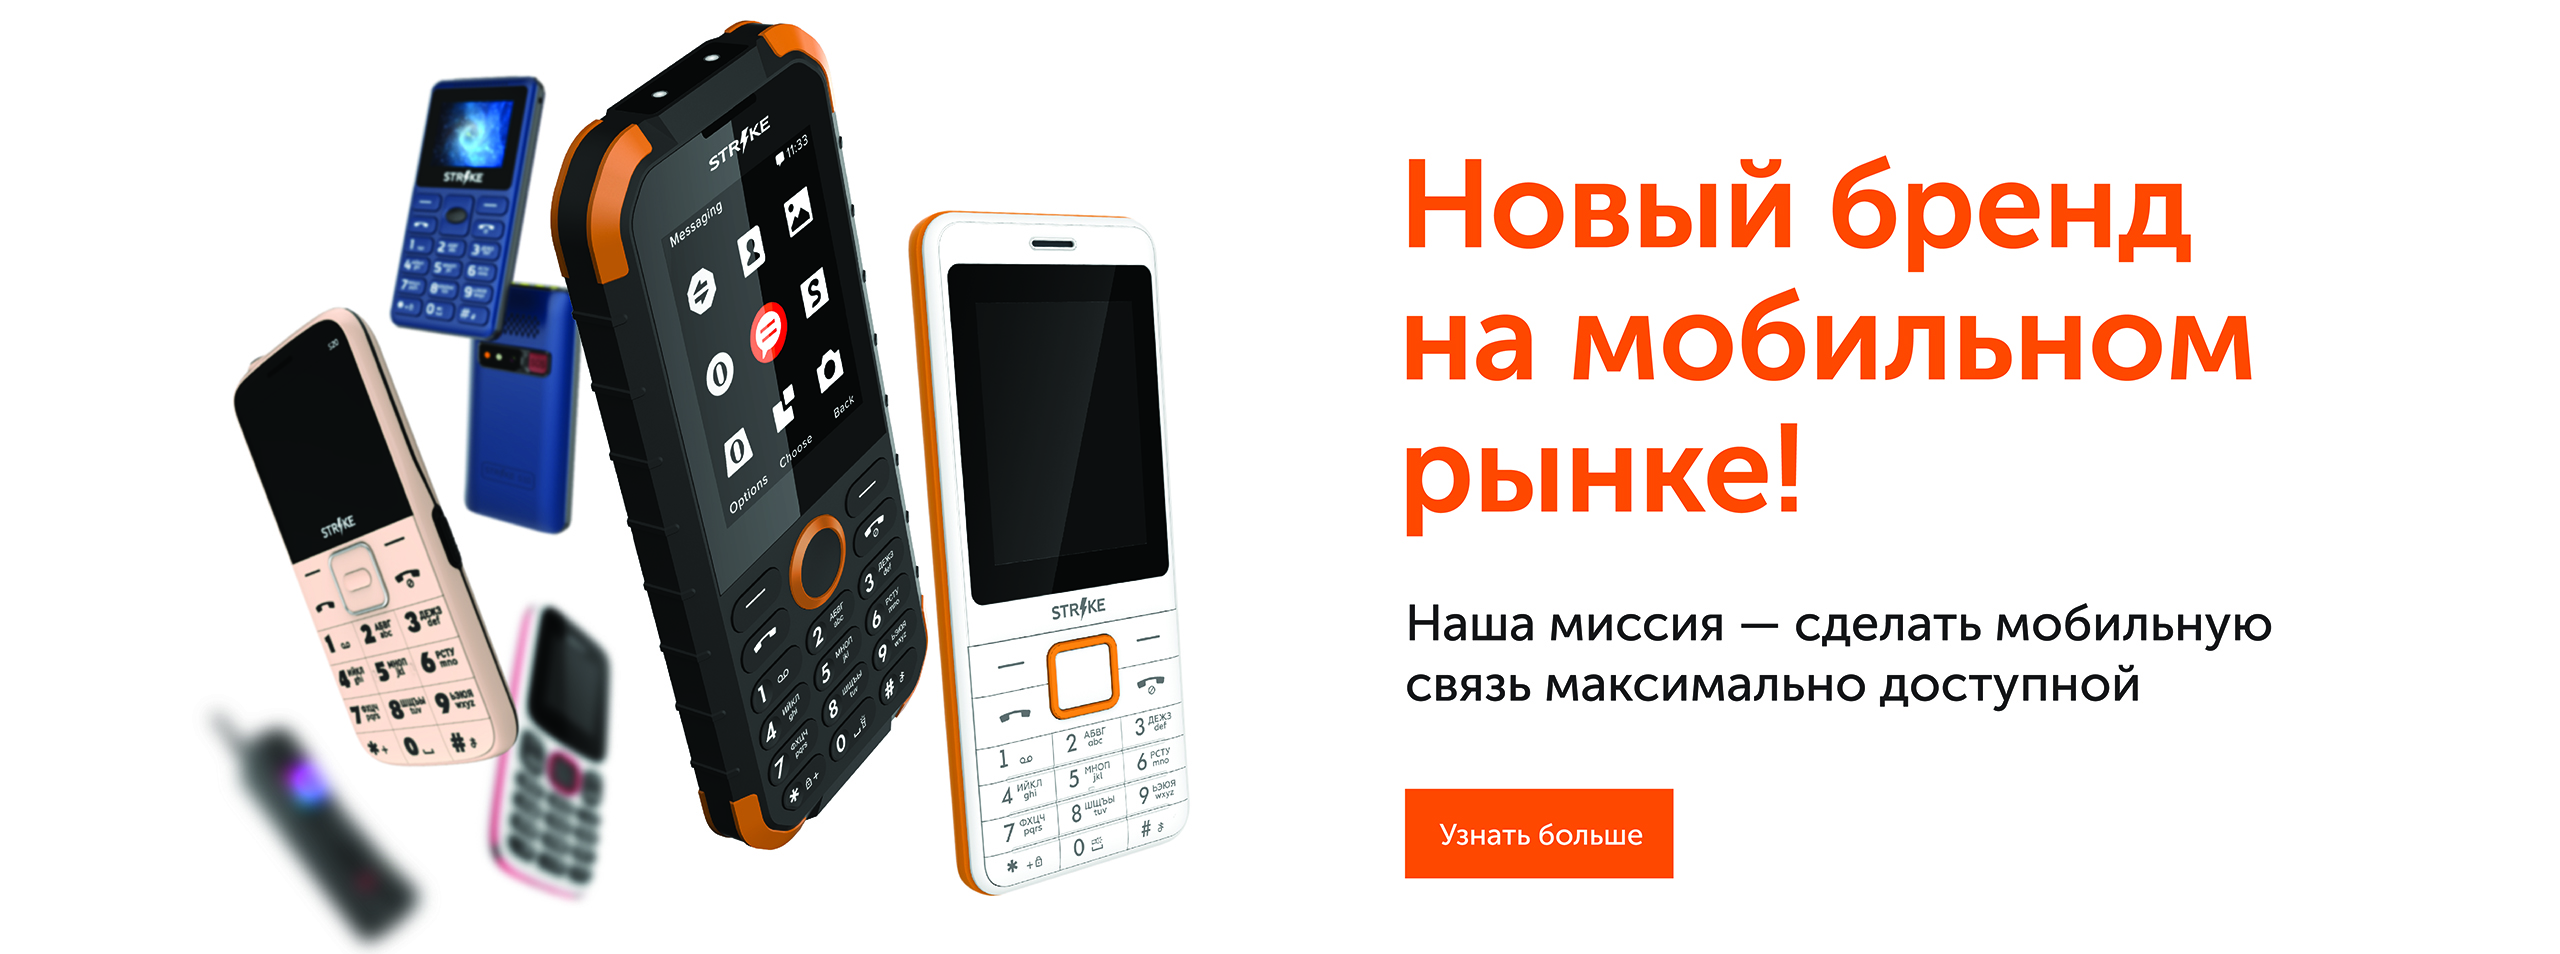 Strike – это российский производитель мобильных устройств.